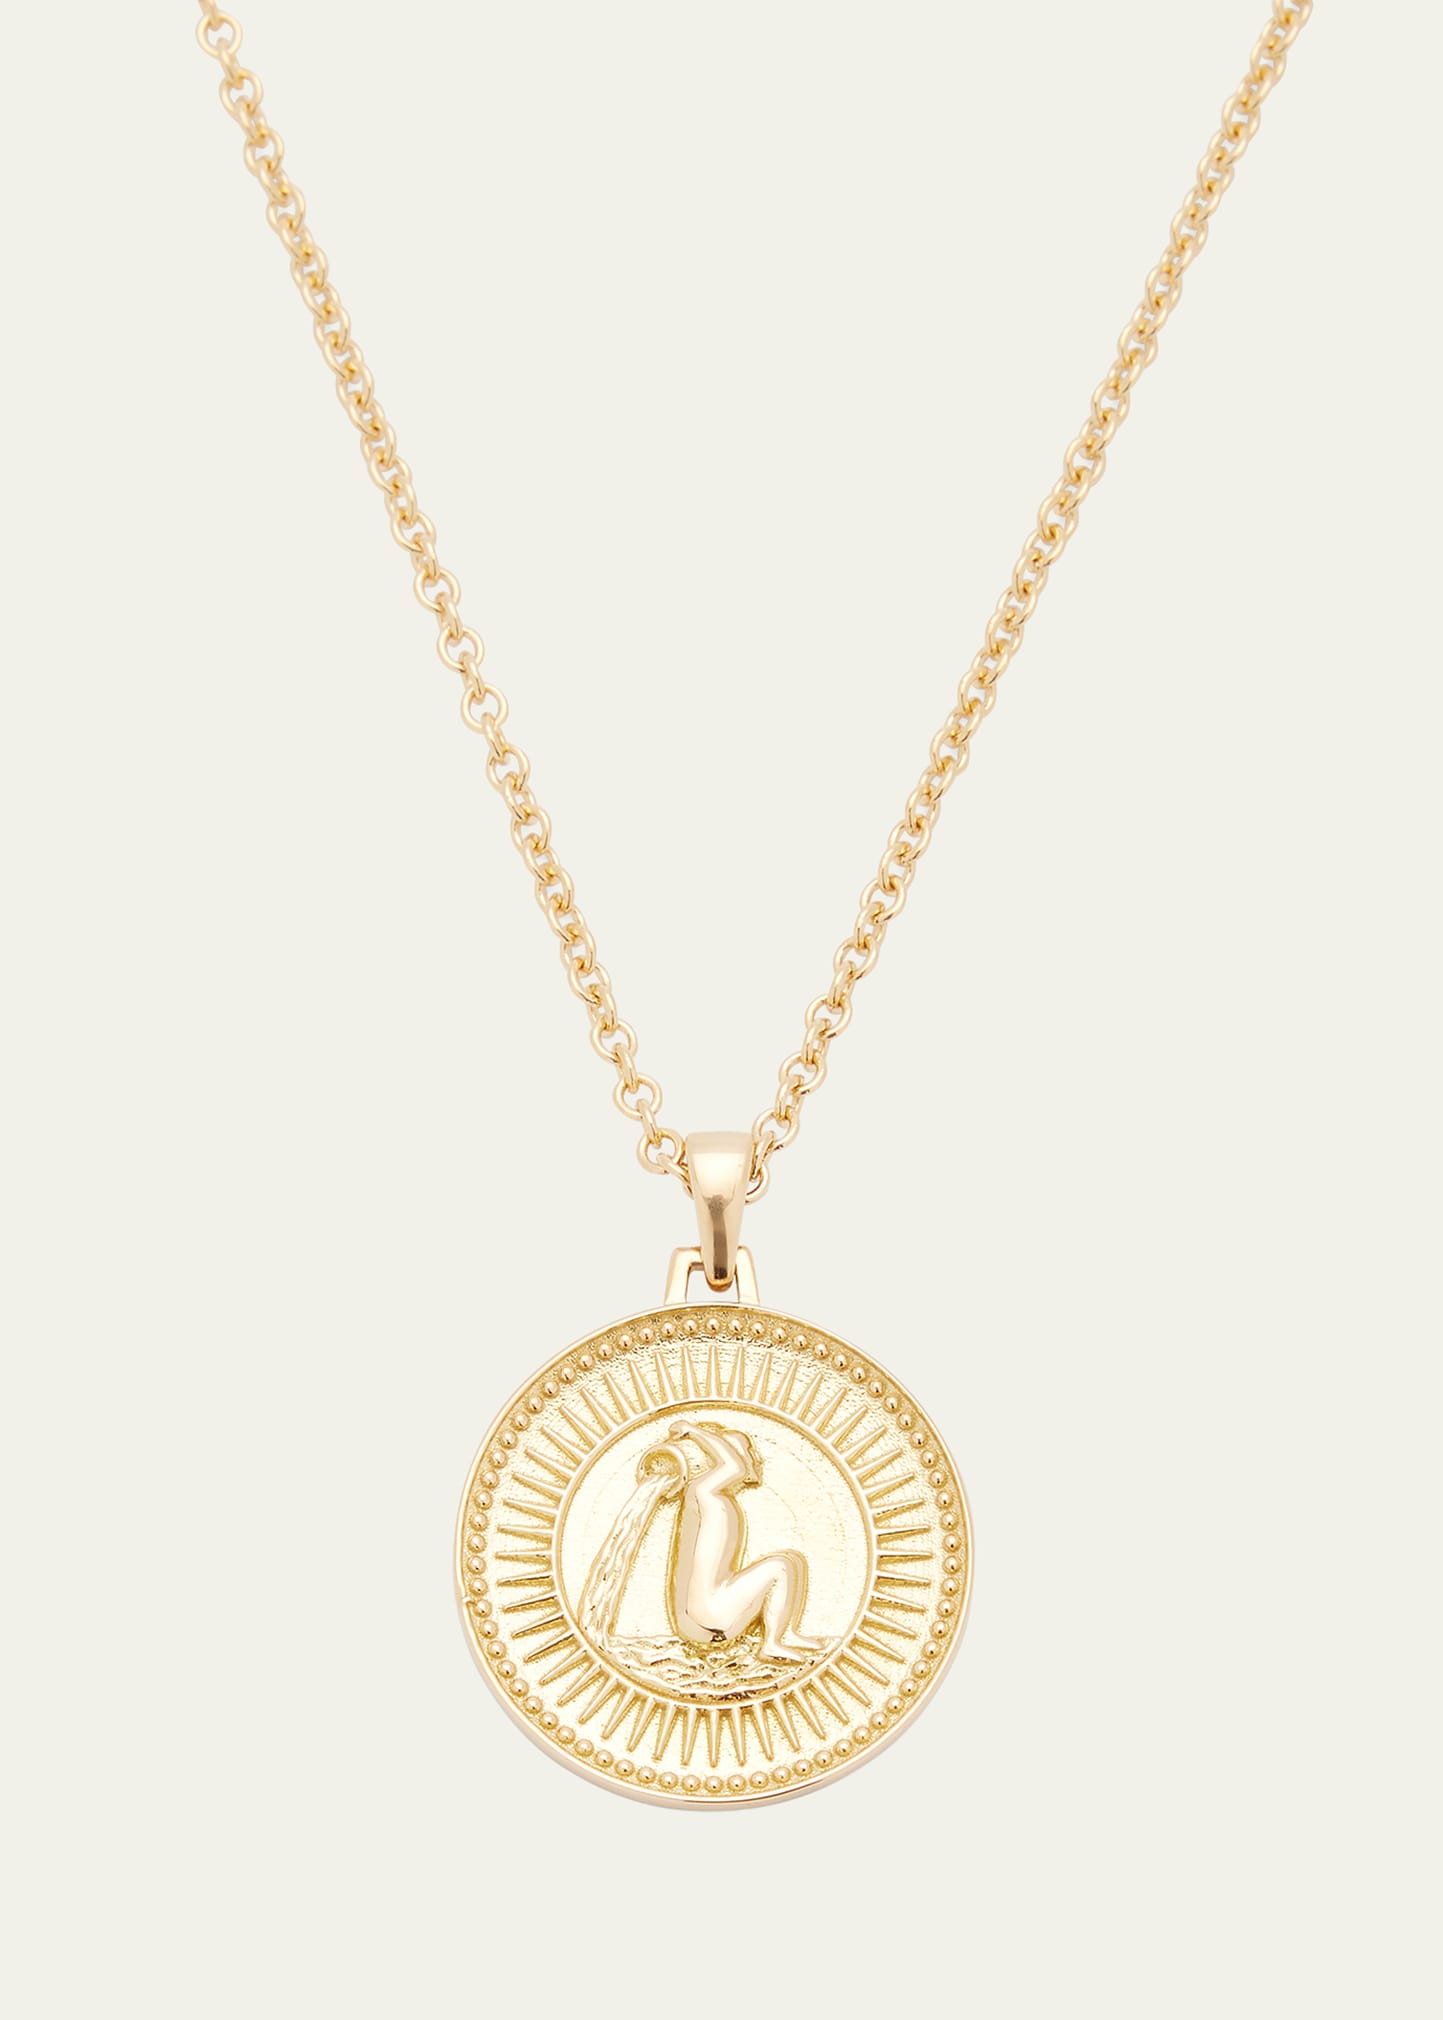 Futura Jewelry Fairmined Gold Aquarius Necklace